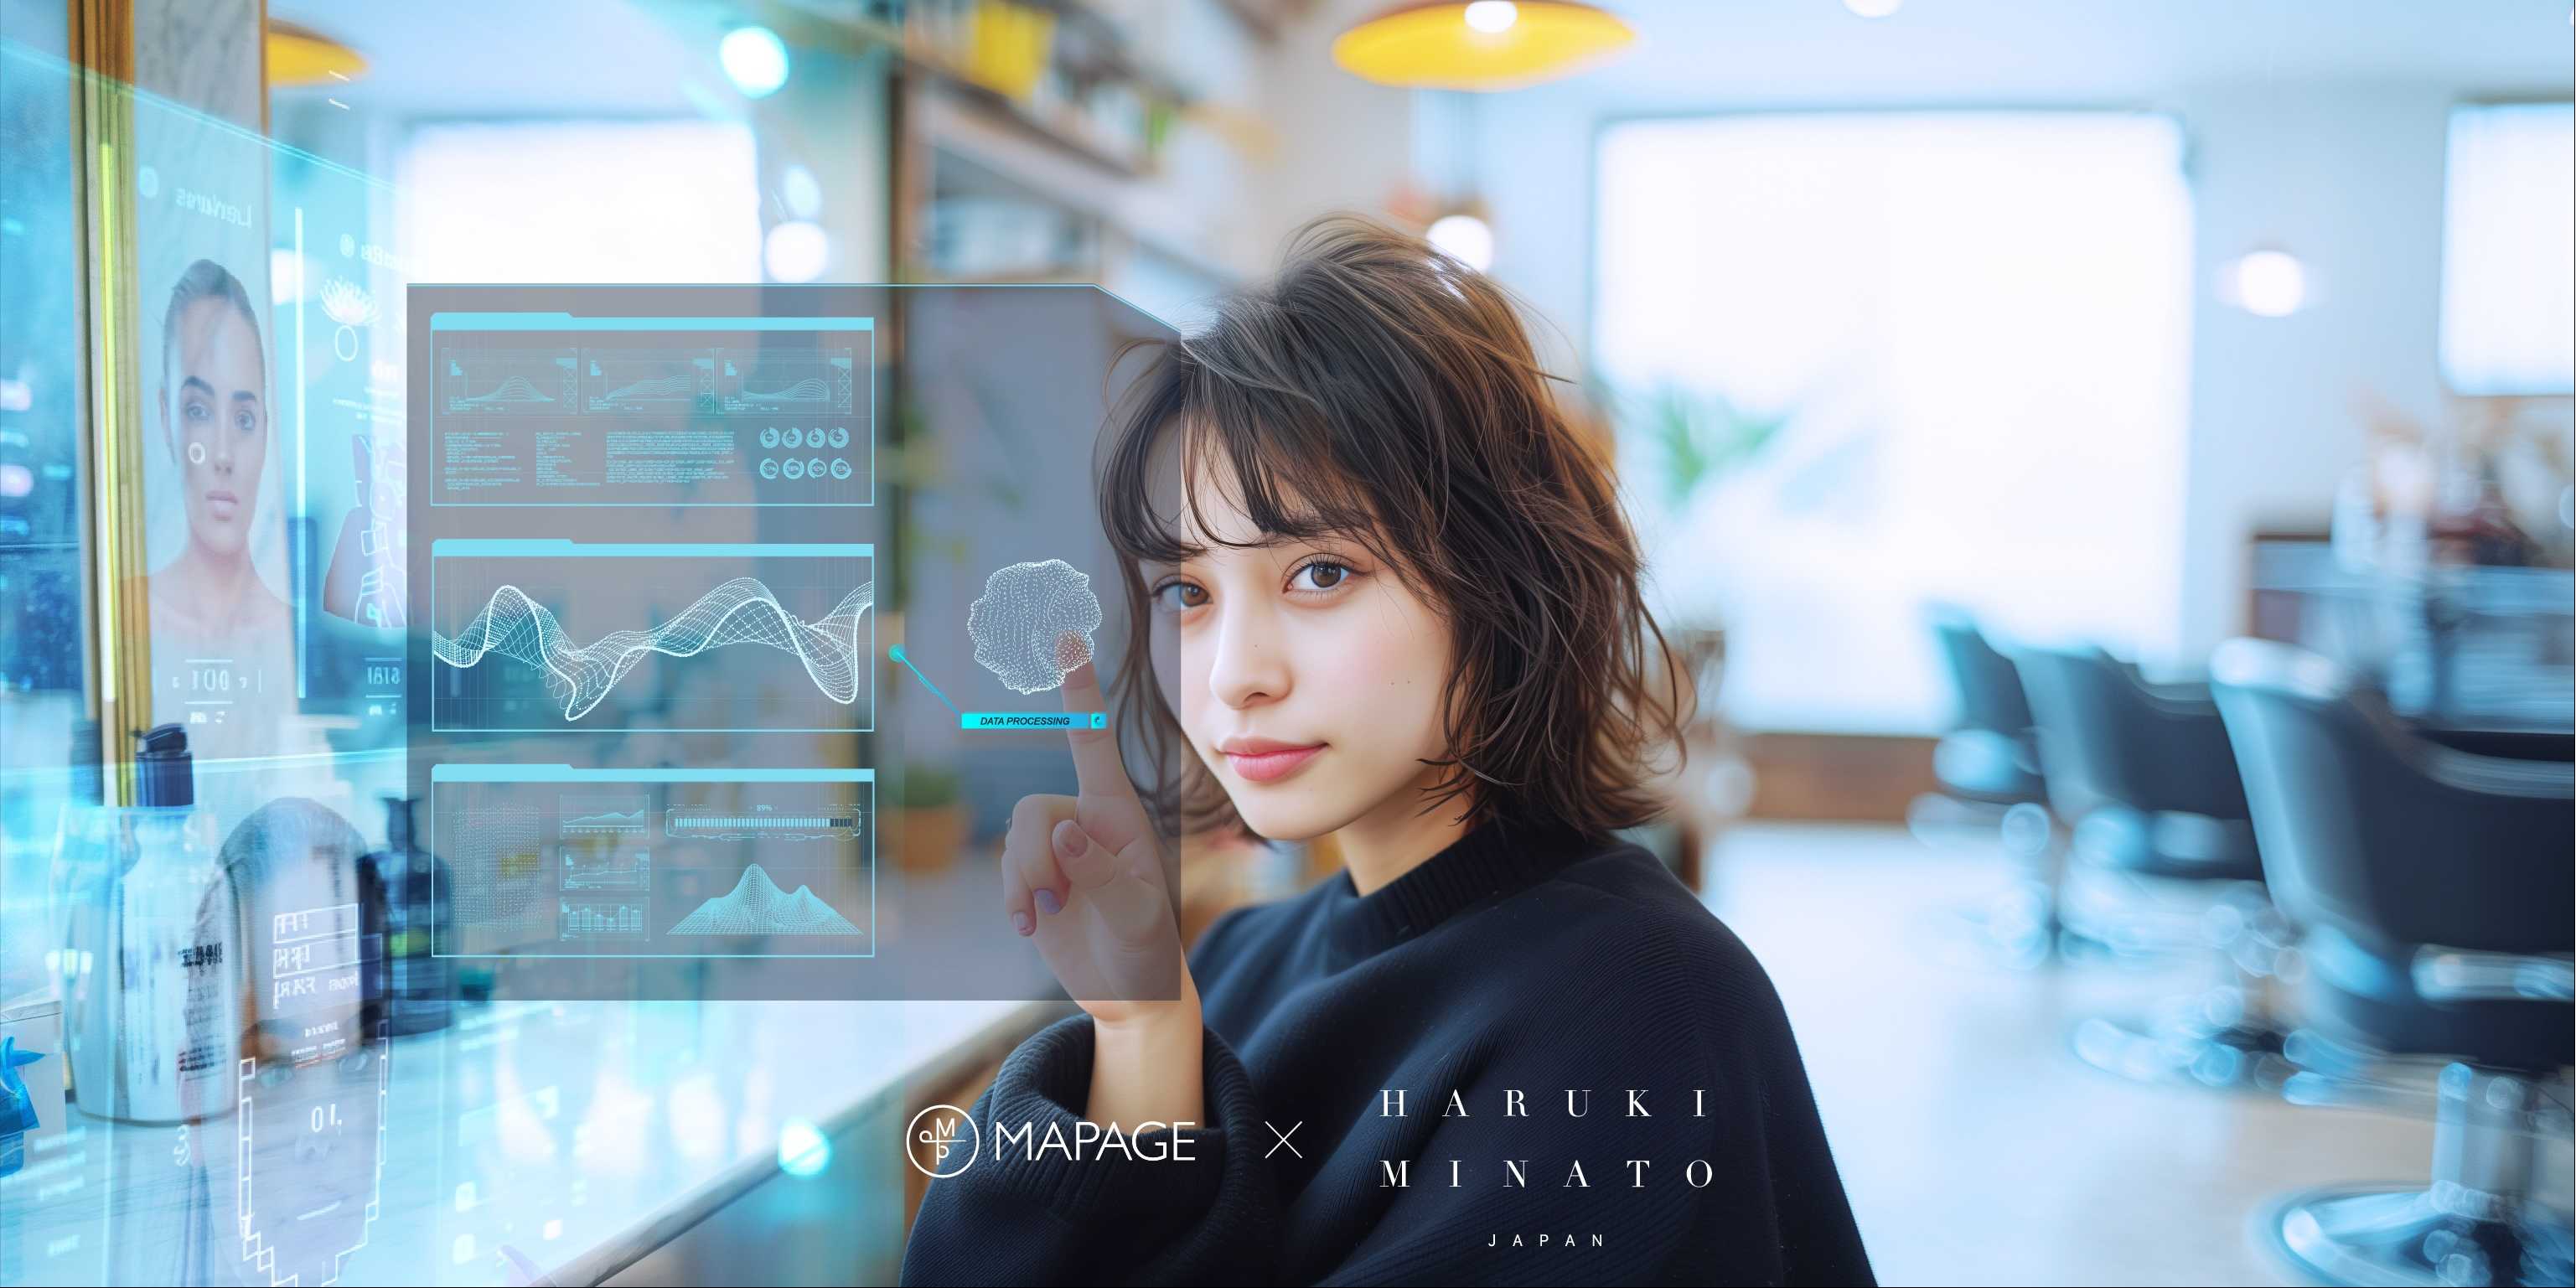 美容師向けビジネスプラットフォーム「MAPAGE」がヘアサロン「HARUKI MINATO JAPAN」福岡店で「サロンの情報空間化」トライアルを開始